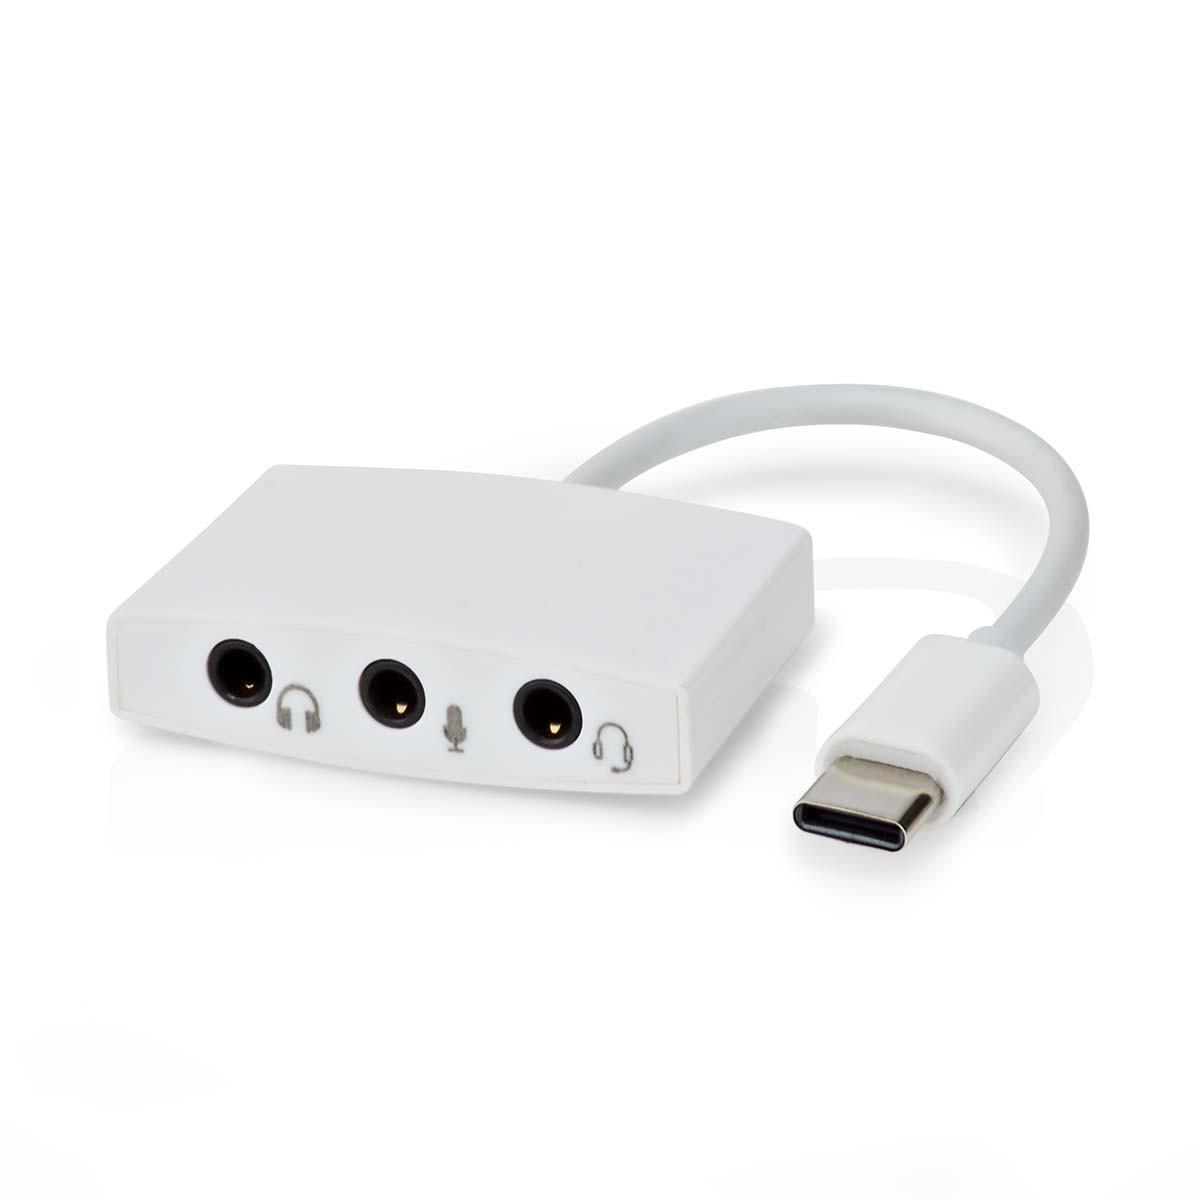 Nedis  Adattatore USB-C™ | USB 2.0 | USB-C™ Maschio | 3,5 mm Femmina | 0,10 m | Rotondo | Nichelato | ABS/PVC | Bianco | Scatola 